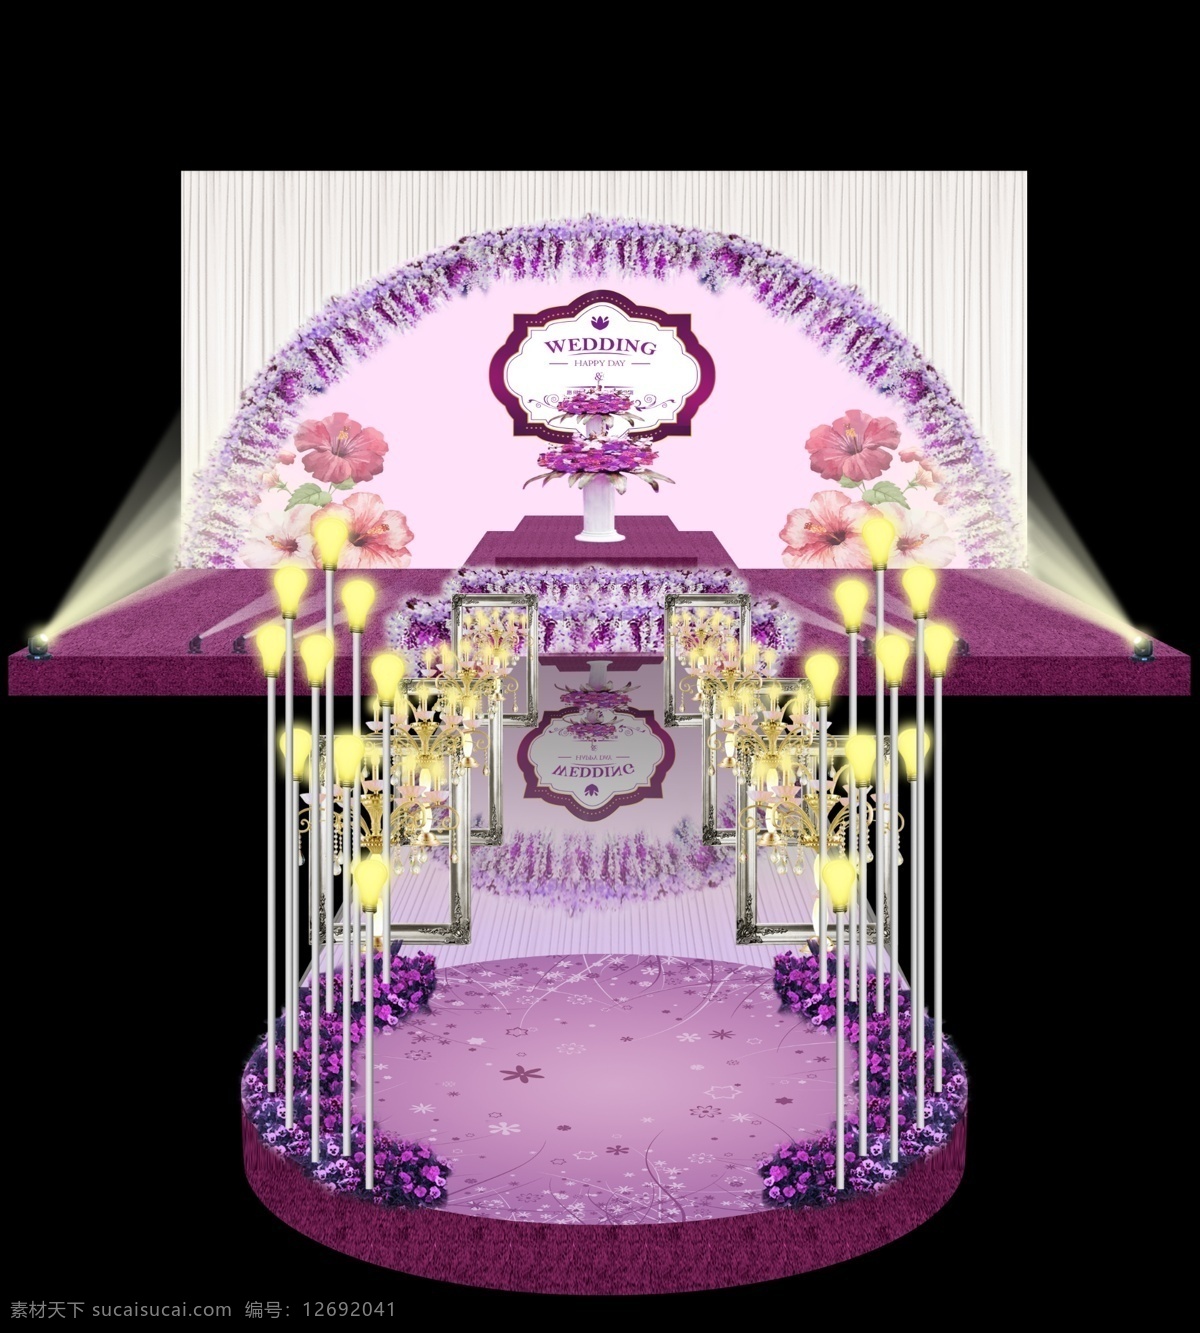 紫色花门婚礼 紫色 婚礼 花 花门 拱形 欧式相框 龙珠灯 圆舞台 花盆 logo 镜面 灯光